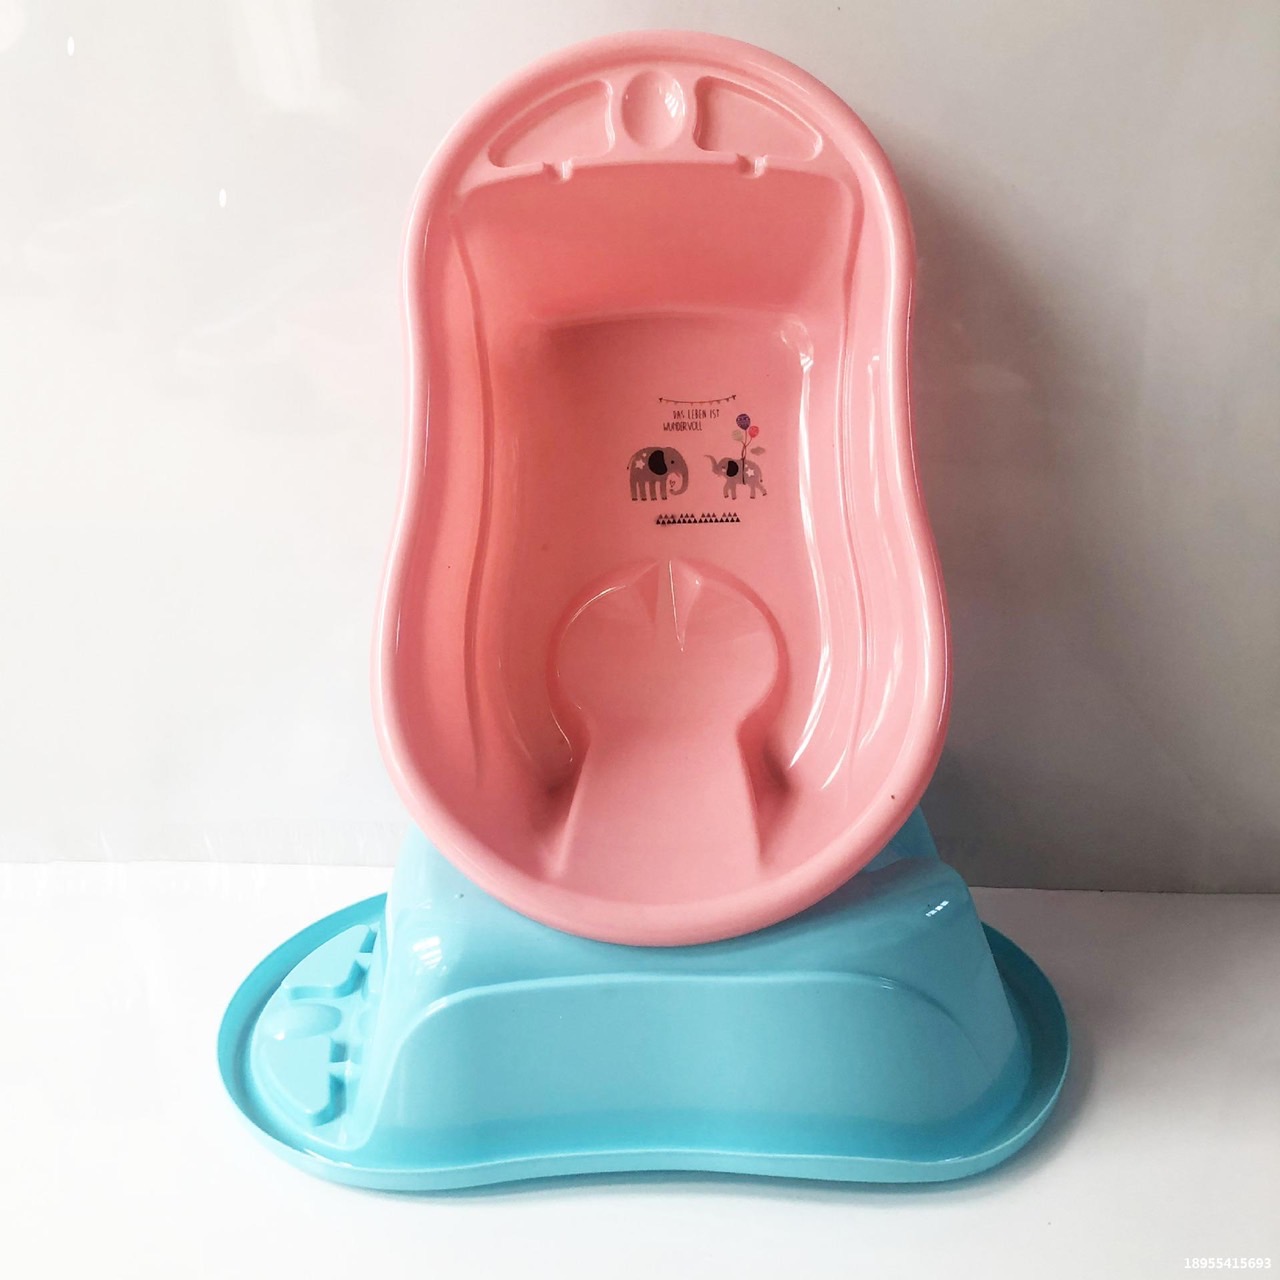 อ่างอาบน้ำลายการ์ตูน​ กะละมังอาบน้ำเด็ก อ่างอาบน้ำเด็กแรกเกิด-1ปี สีพลาสเทล